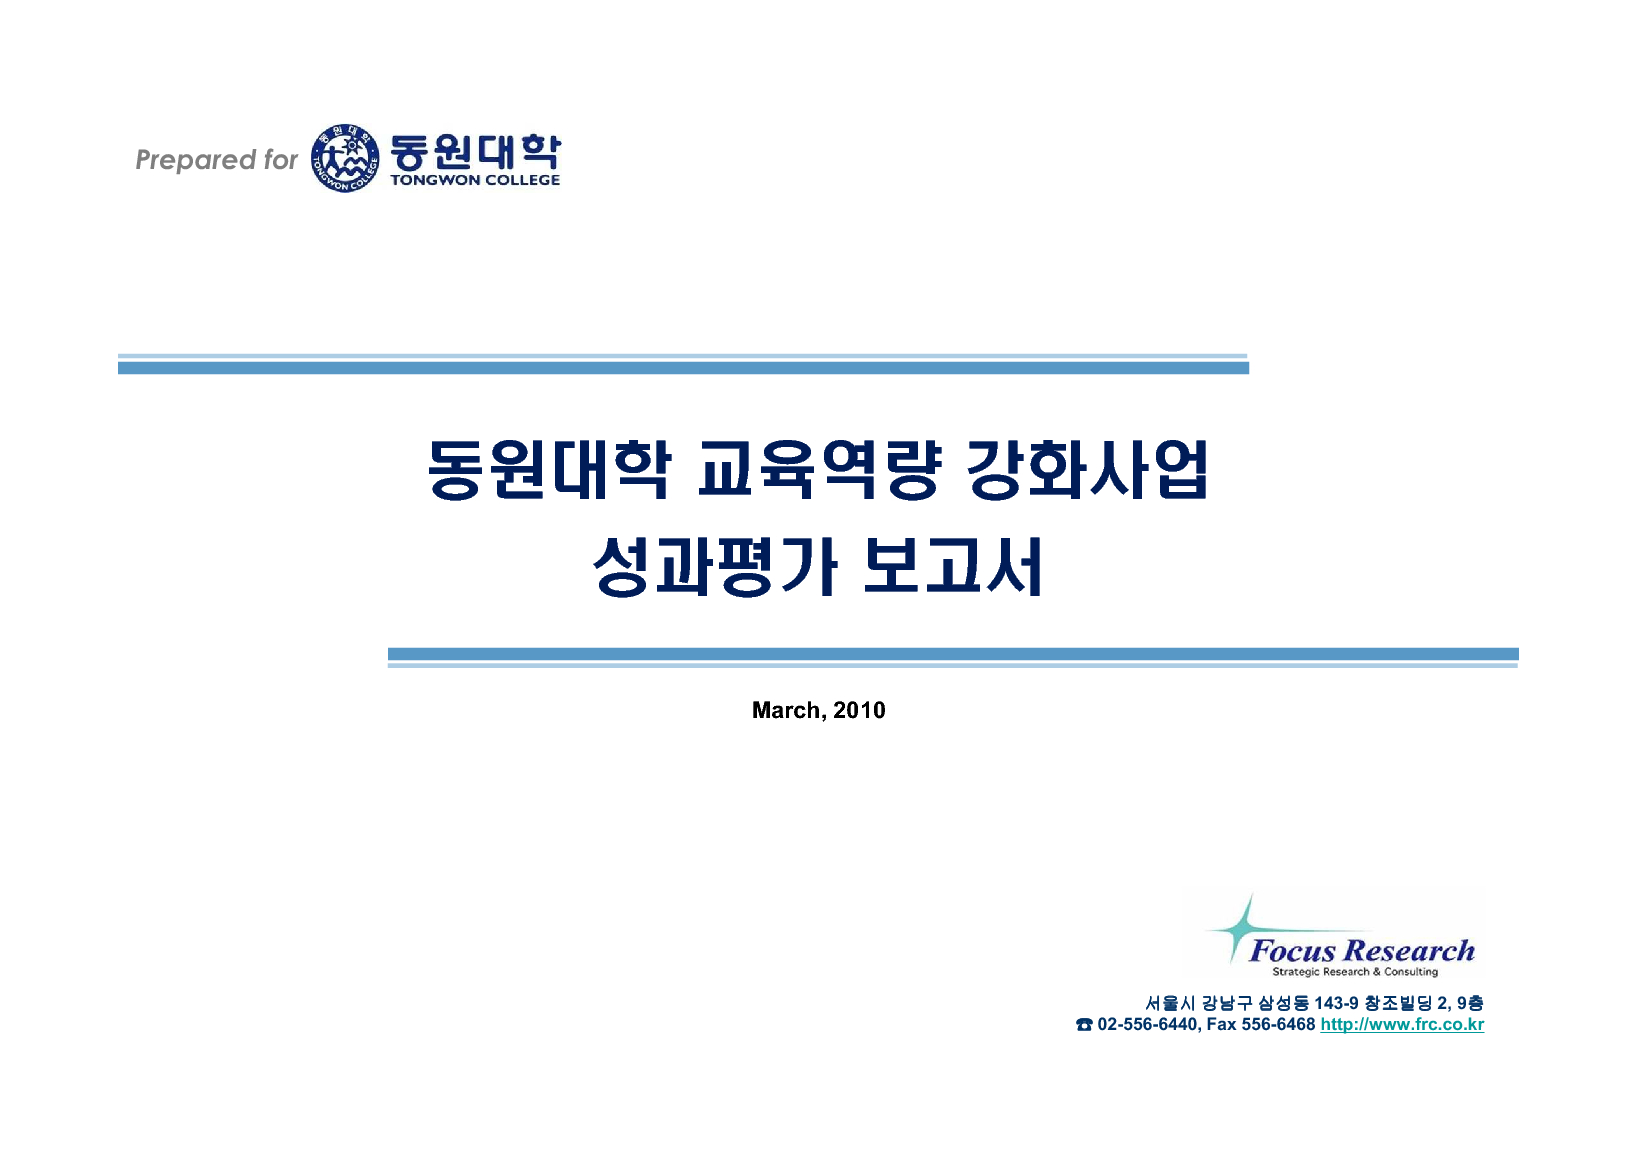 2009년 동원대학 교육역량 강화사업 성과평가 보고서